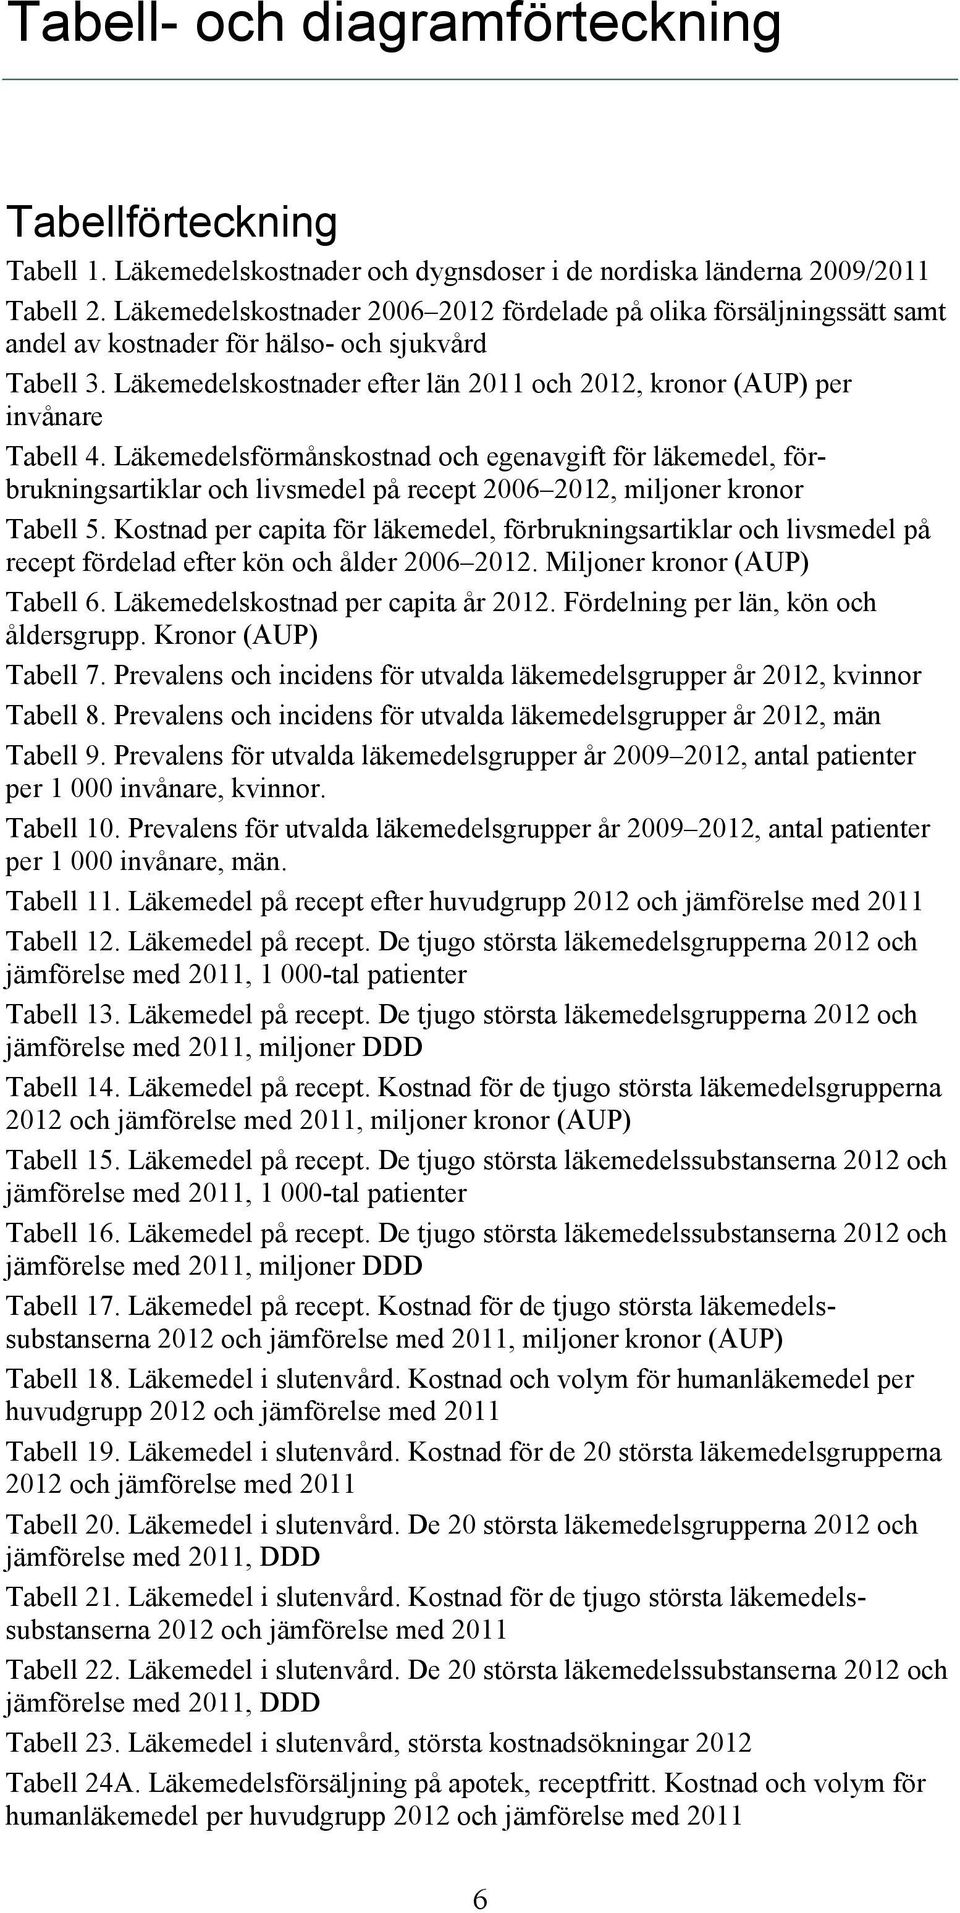 Läkemedelskostnader efter län 2011 och 2012, kronor (AUP) per invånare Tabell 4. och egenavgift för läkemedel, förbrukningsartiklar och livsmedel på 2006 2012, miljoner kronor Tabell 5.